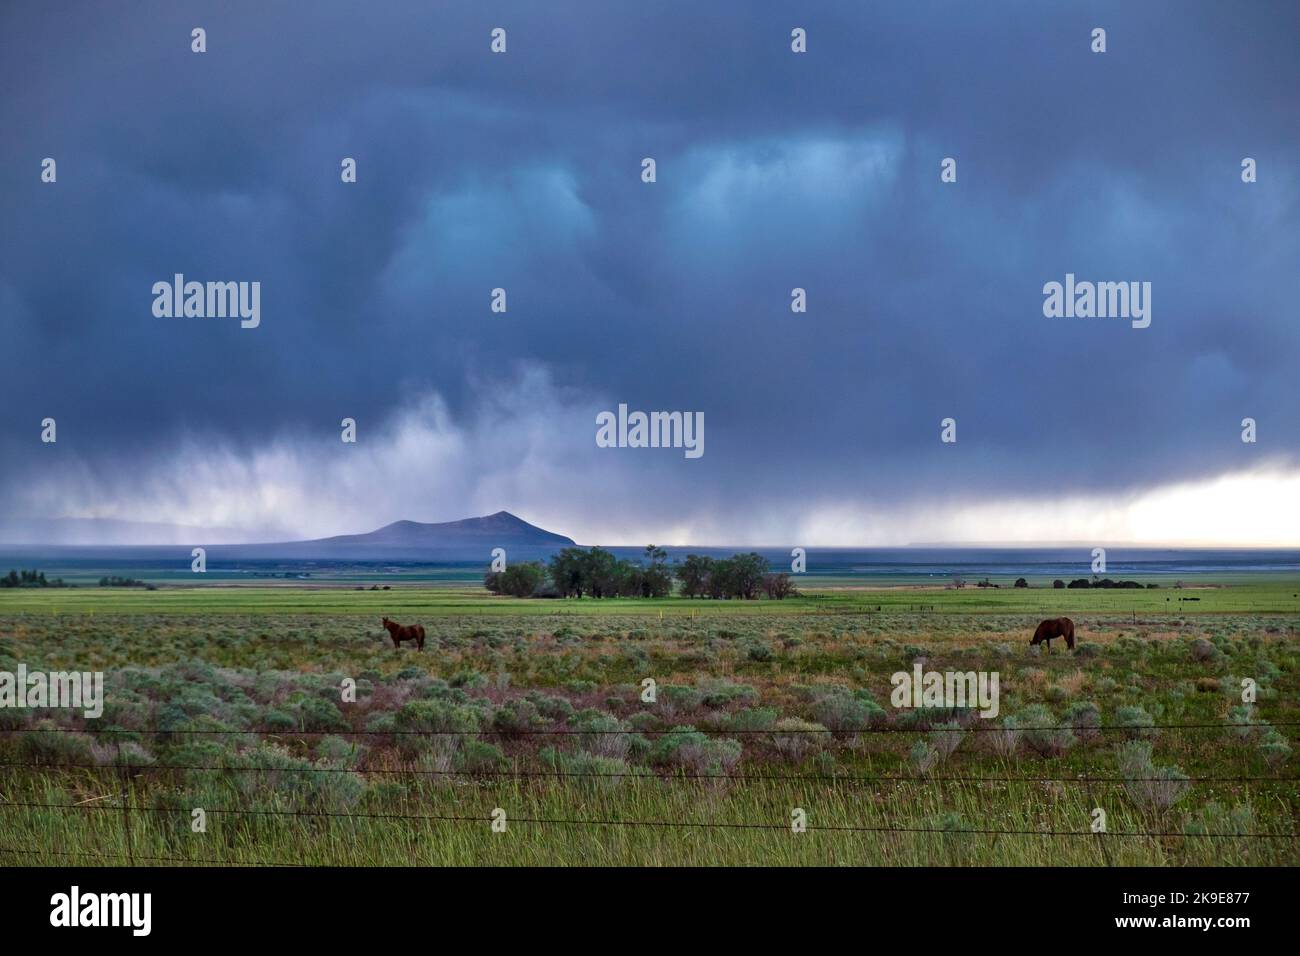 Caballos en la cordillera, pasando por una tormenta de lluvia, Utah, cerca de la Gran Cuenca, paisaje de manantiales verdes, oeste de los Estados Unidos Foto de stock